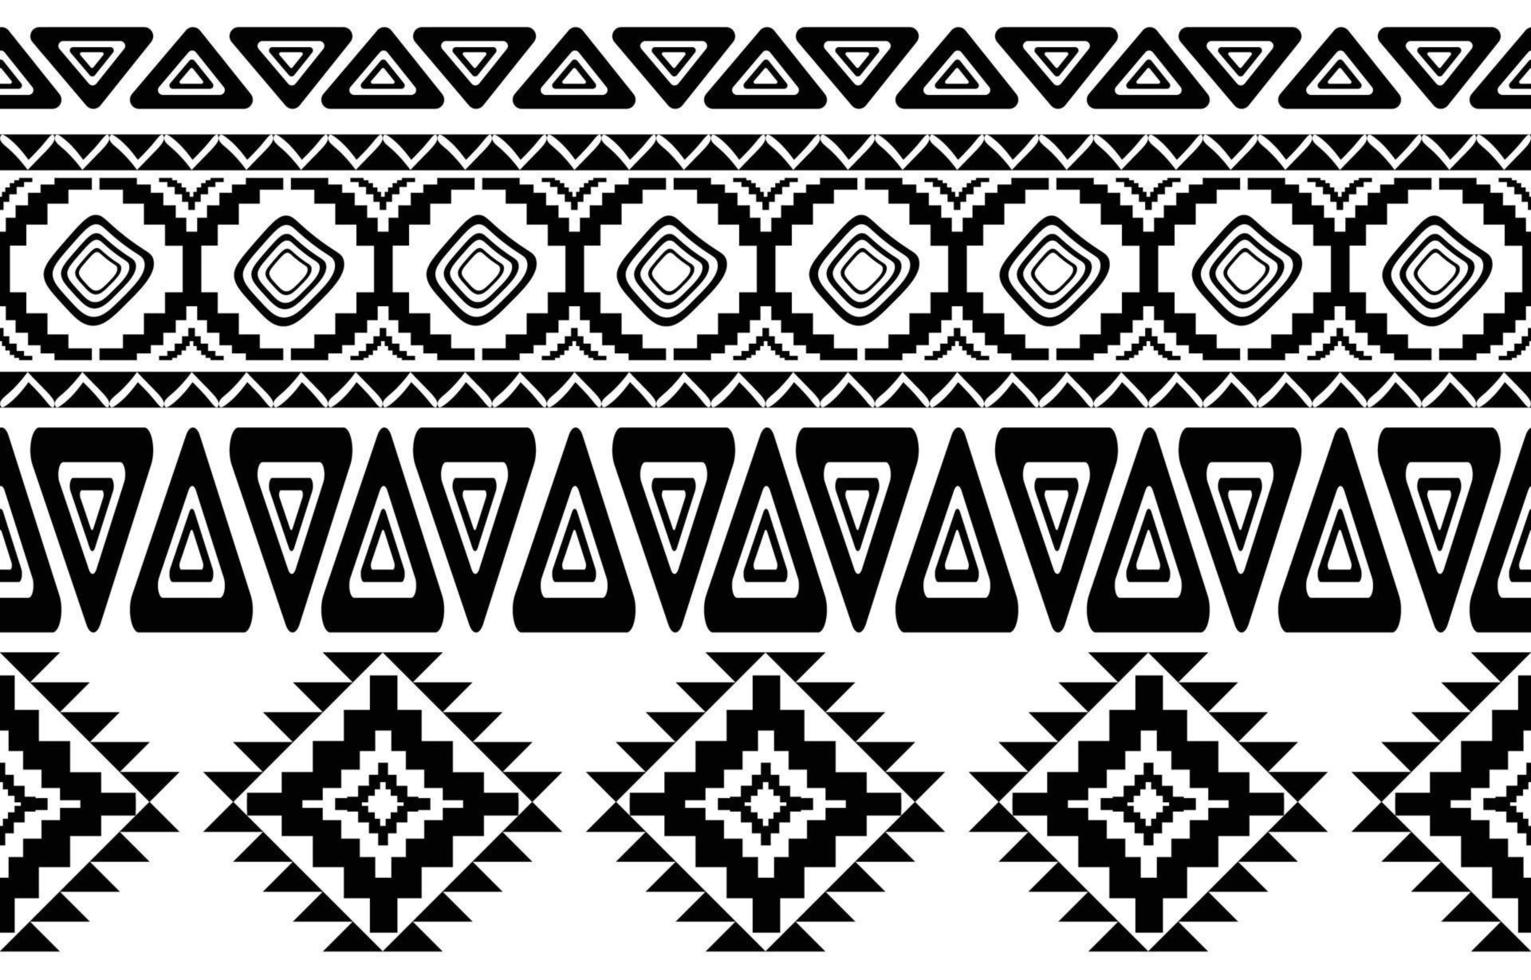 afrikansk tribal svart och vitt abstrakt etniska geometriska mönster. design för bakgrund eller wallpaper.vector illustration för att skriva ut tygmönster, mattor, skjortor, kostymer, turban, hattar, gardiner. vektor